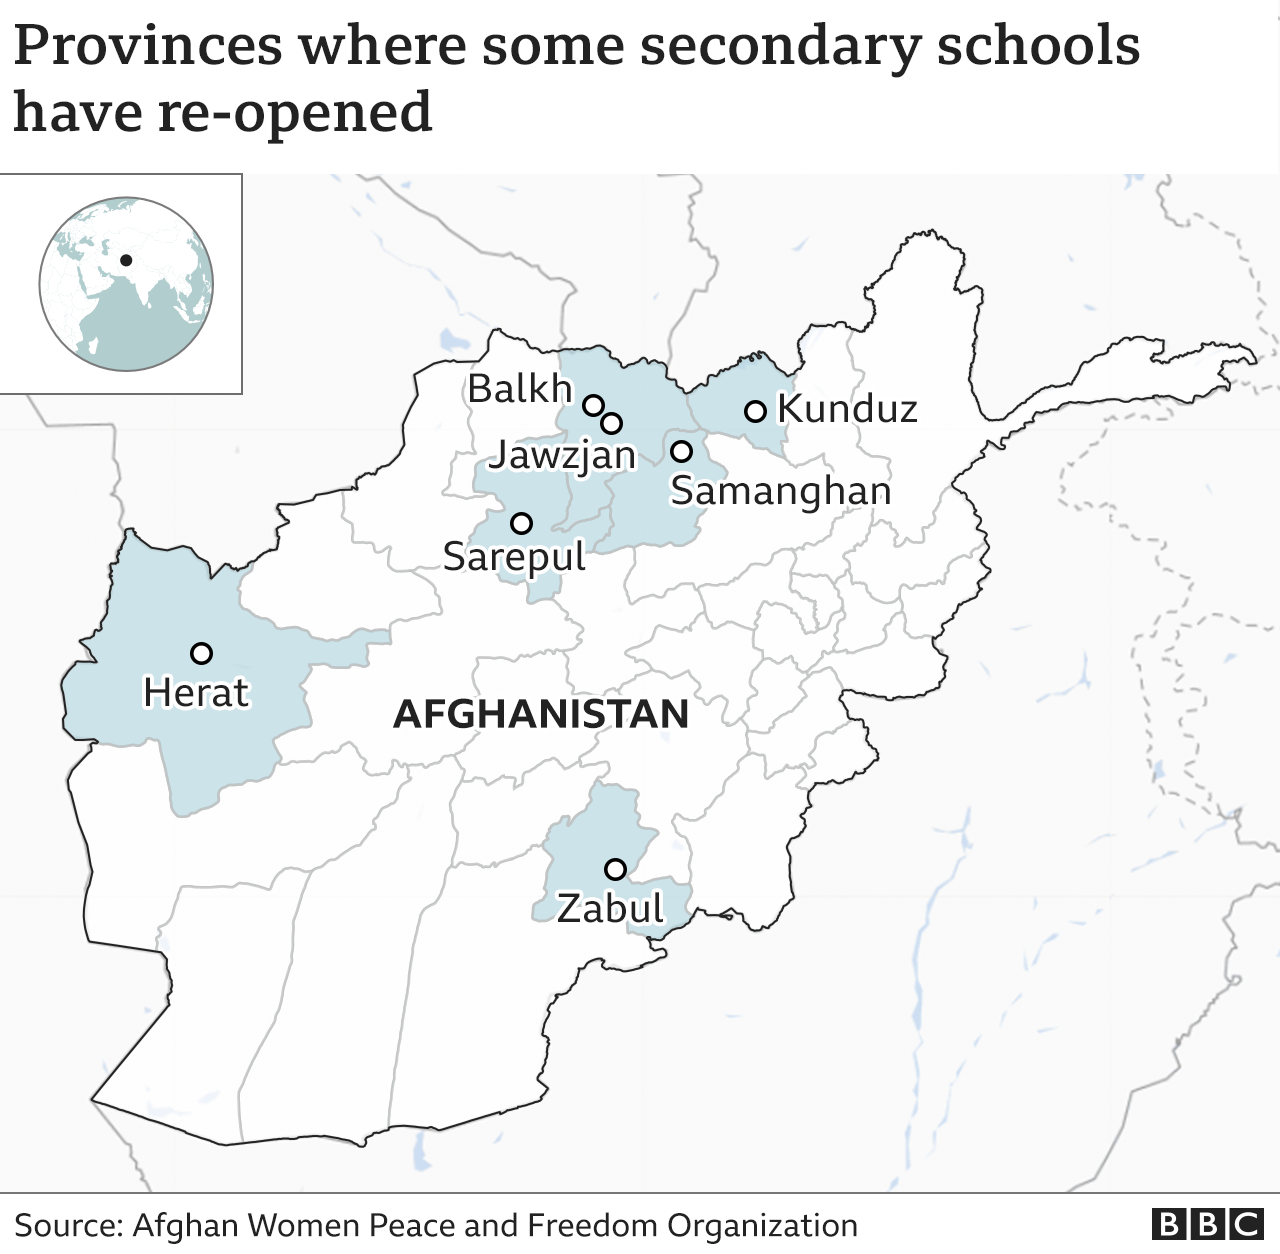 На карте выделены семь провинций, в которых вновь открылись средние школы для девочек